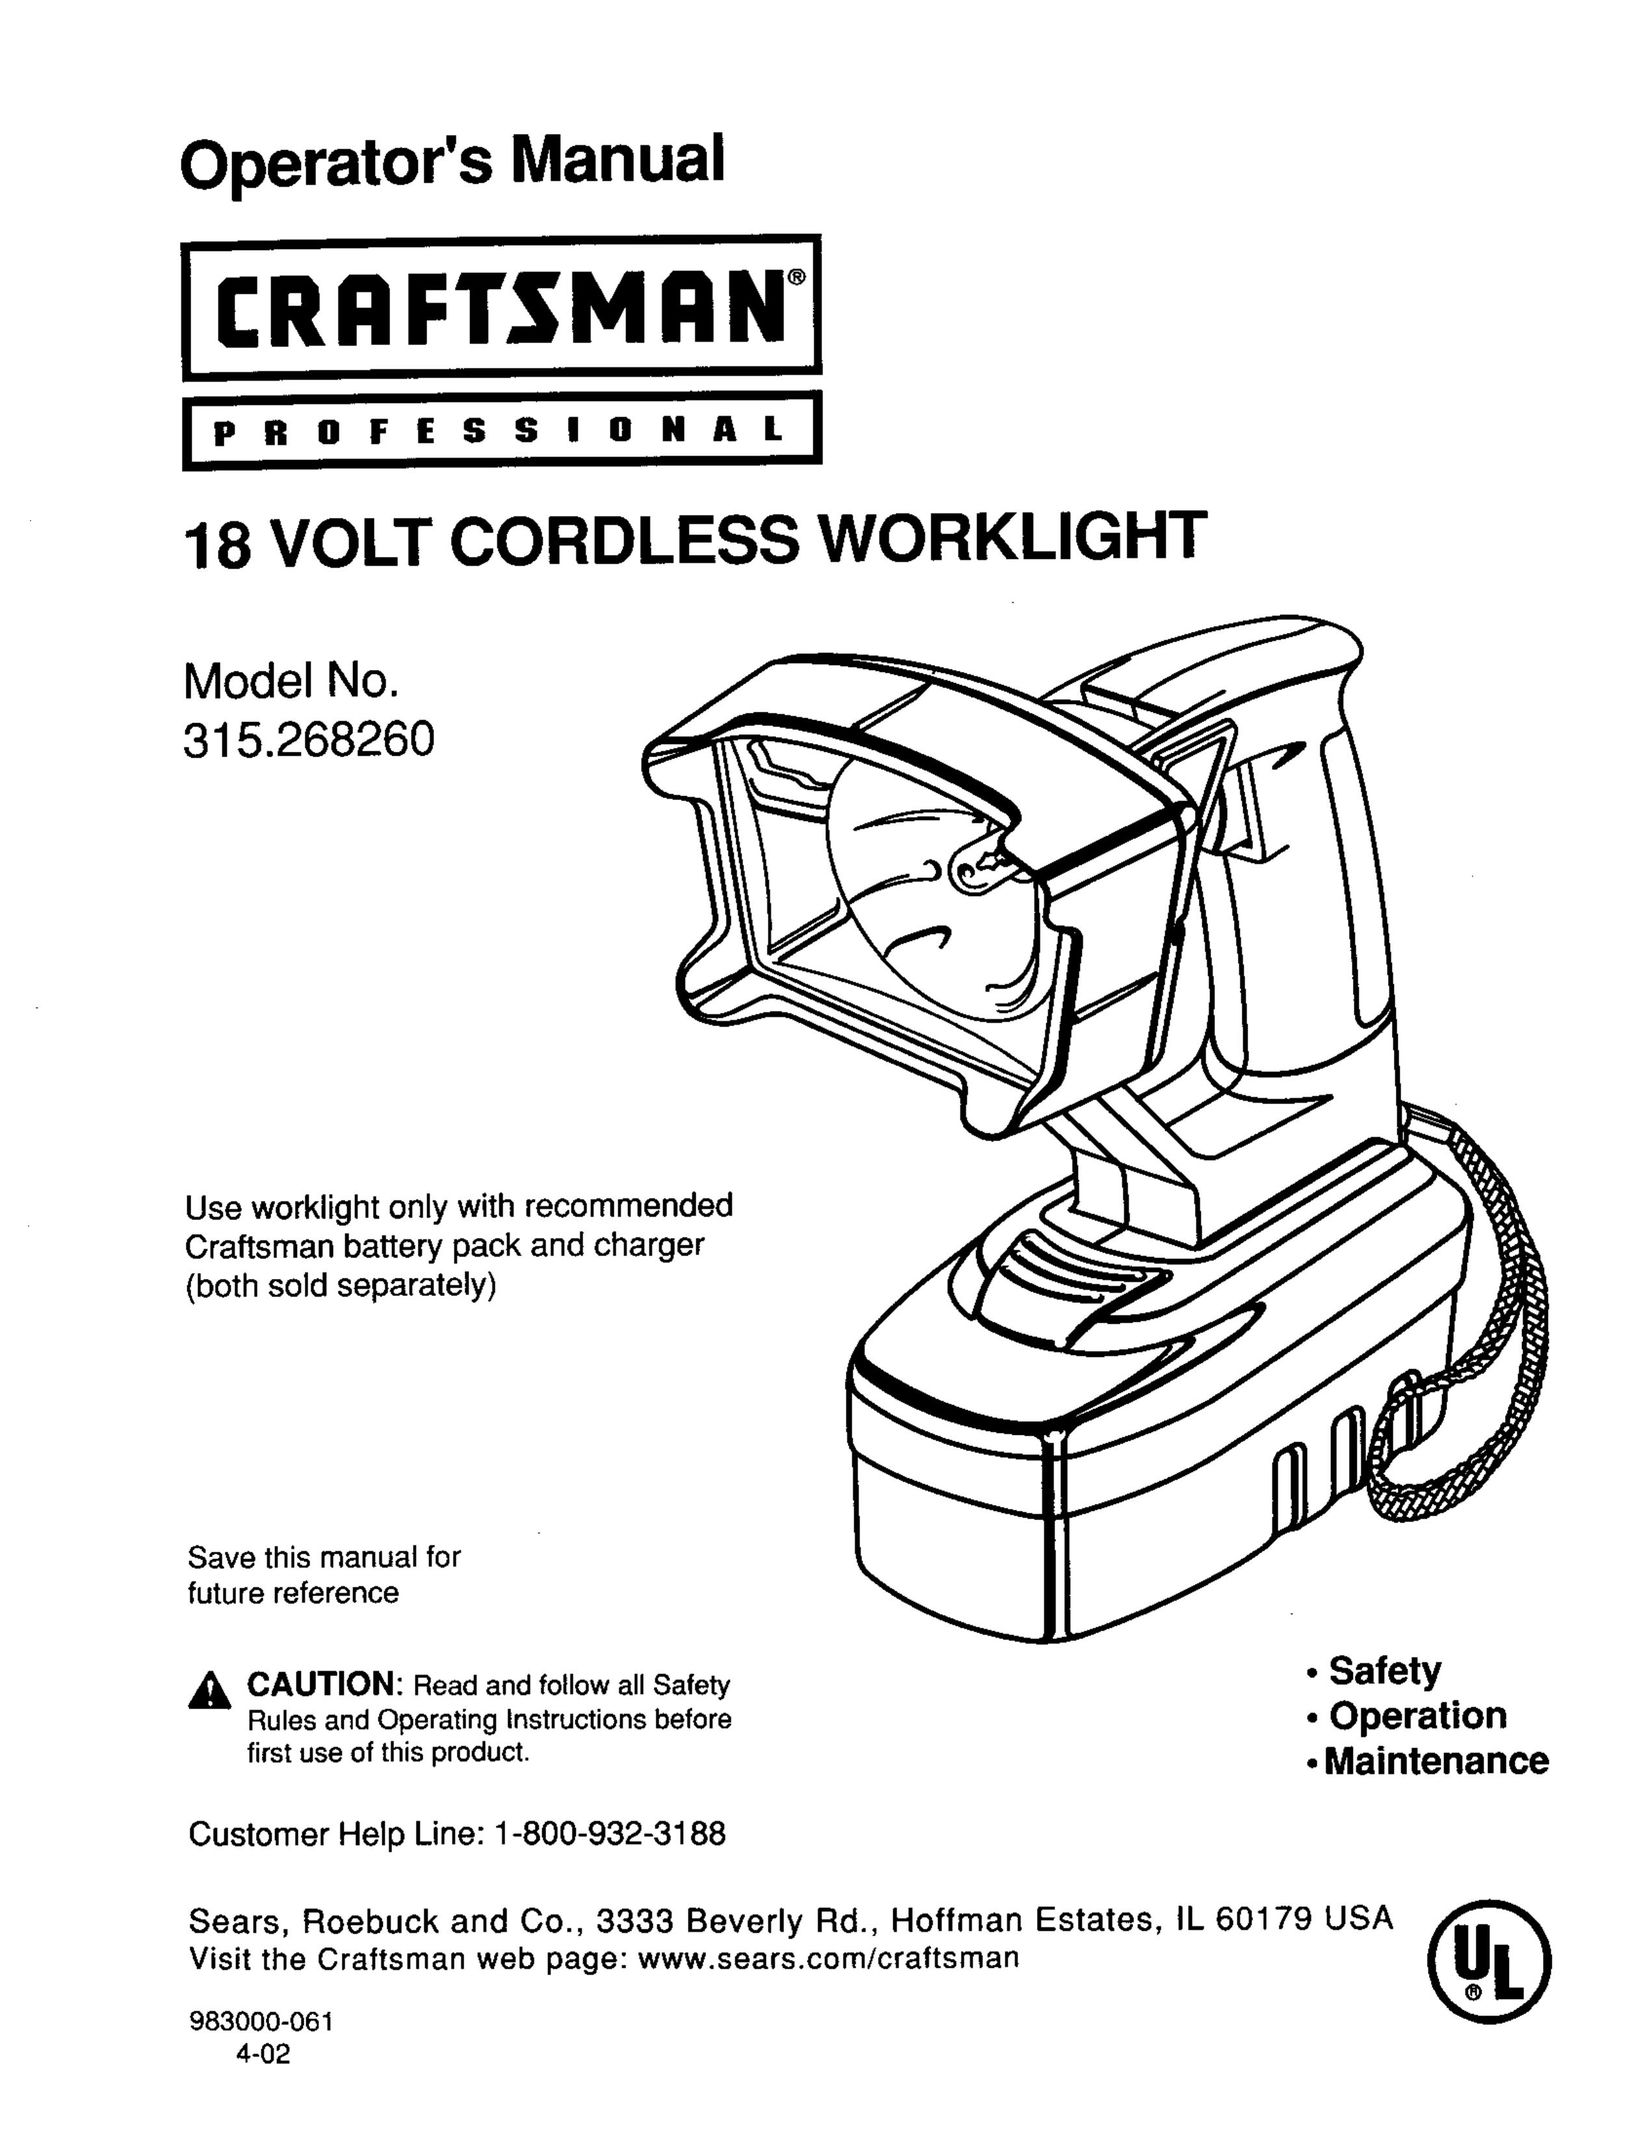 Craftsman 315.268260 Work Light User Manual